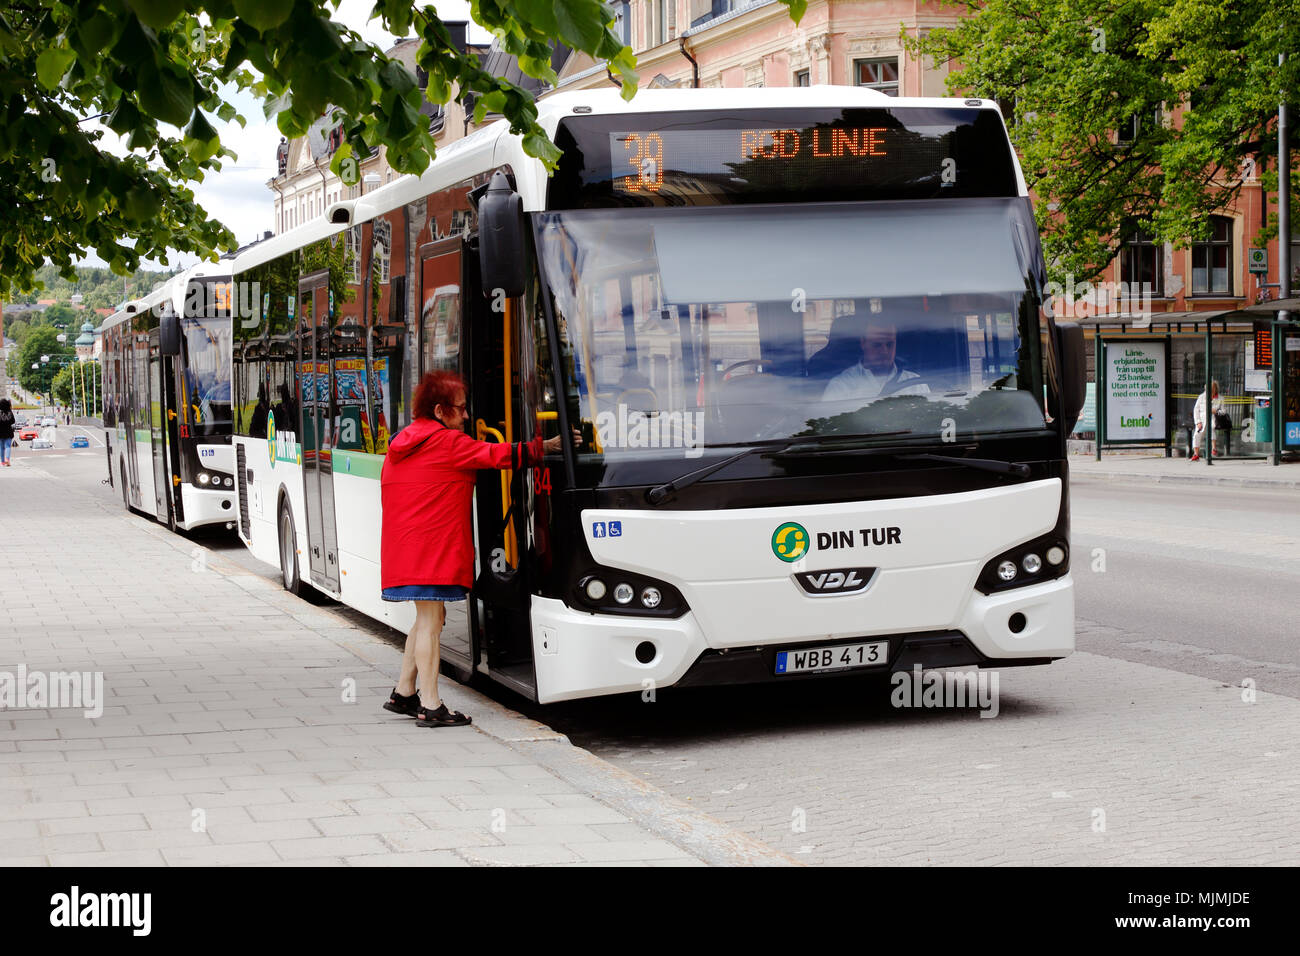 Harnosand, Suecia - Julio 5, 2017: Una anciana con ropa roja camina a bordo del autobús de la ciudad blanca en el tráfico en línea 39 Min Tur en la parada de autobús Foto de stock